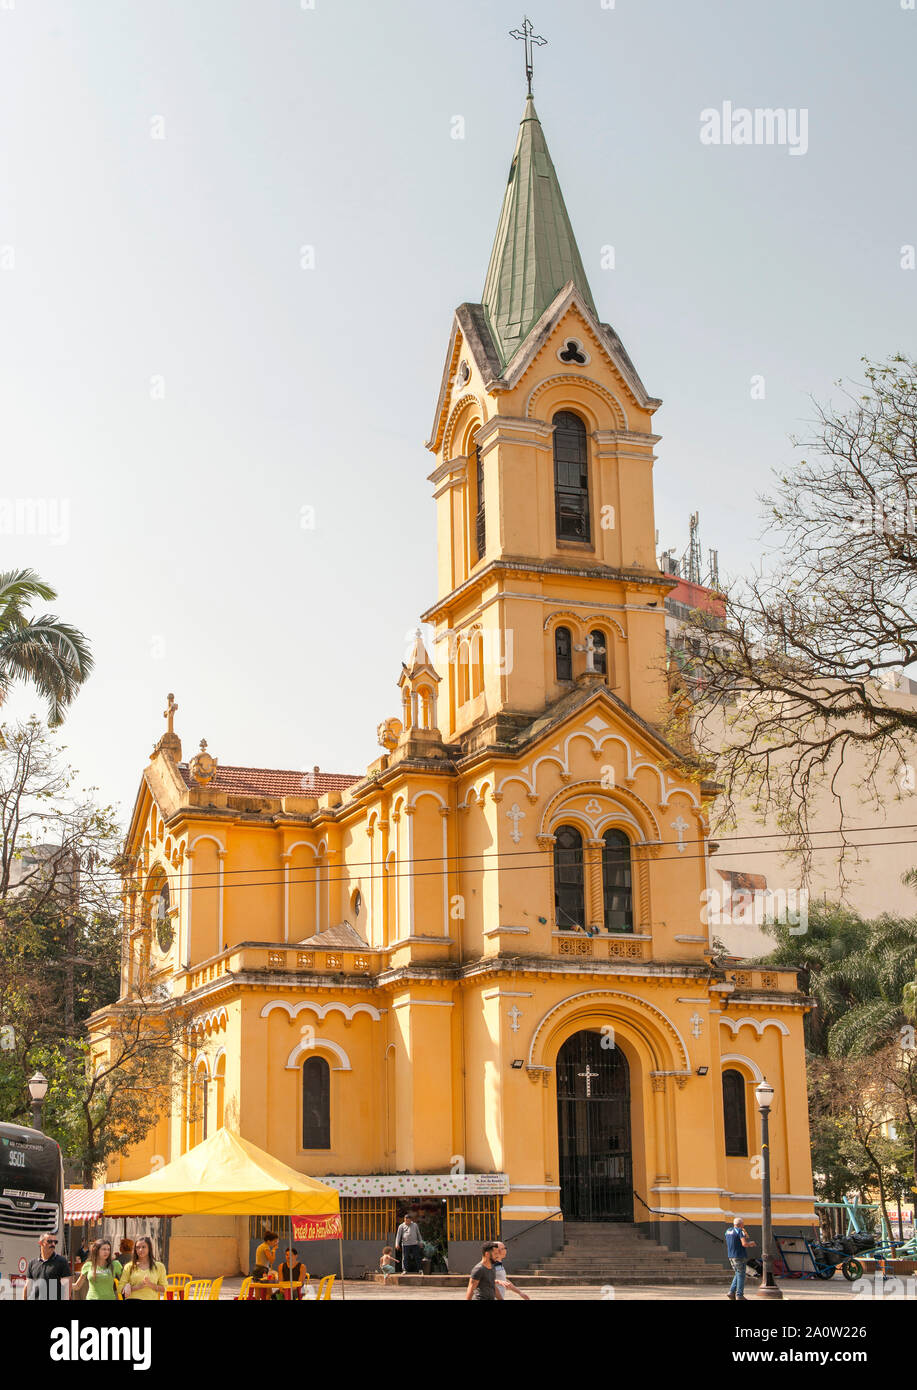 La Iglesia de Nuestra Señora del Rosario de los hombres negros en São Paulo, Brasil. También conocida como la Igreja Nossa Senhora do Rosário dos Homens Pretos. Foto de stock